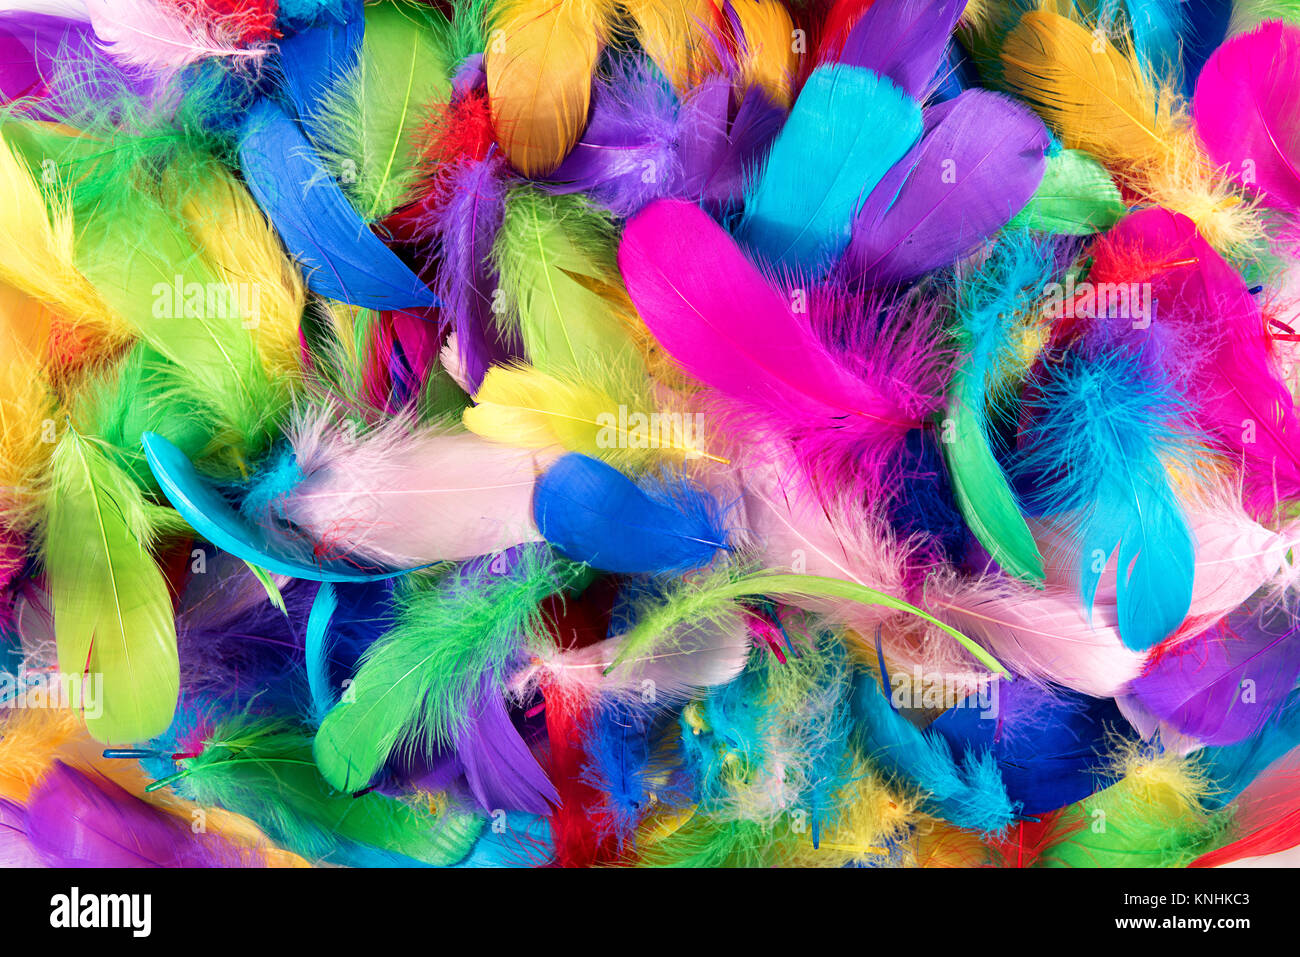 Hintergrund Textur von bunt gefärbten Vogelfedern in den Farben des Regenbogens oder Spektrum in einer zufälligen Stapel von oben in einem full frame gesehen Stockfoto